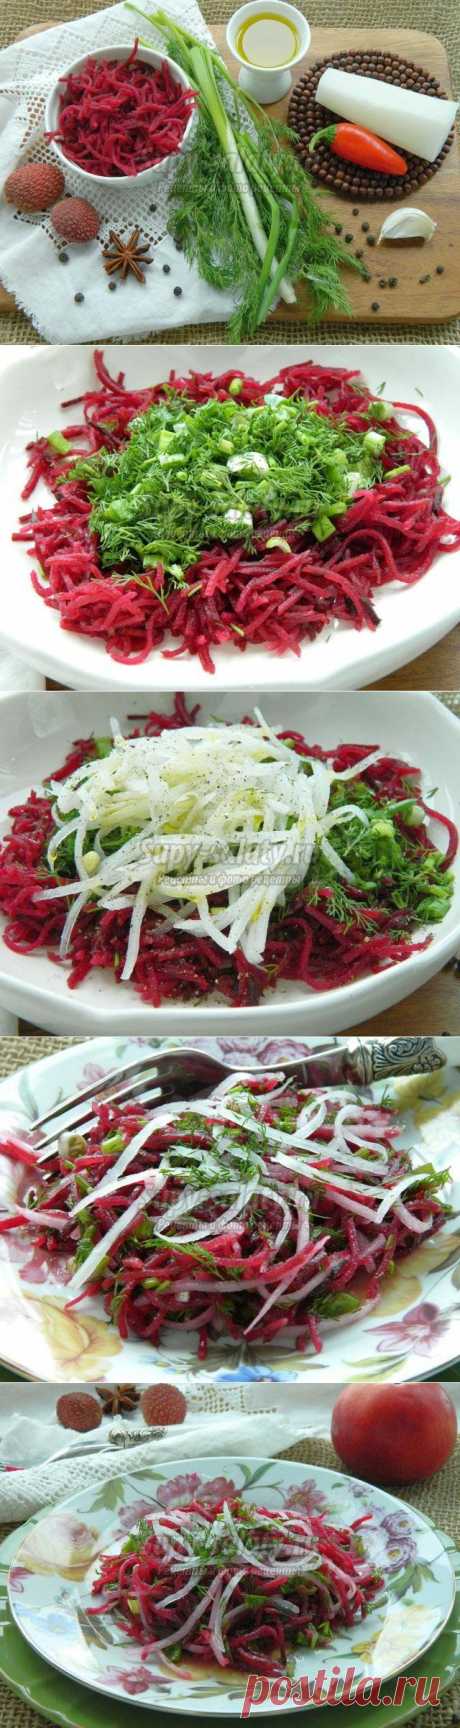 Диетический салат из свеклы и белой редьки дайкон. Рецепт с пошаговыми фото